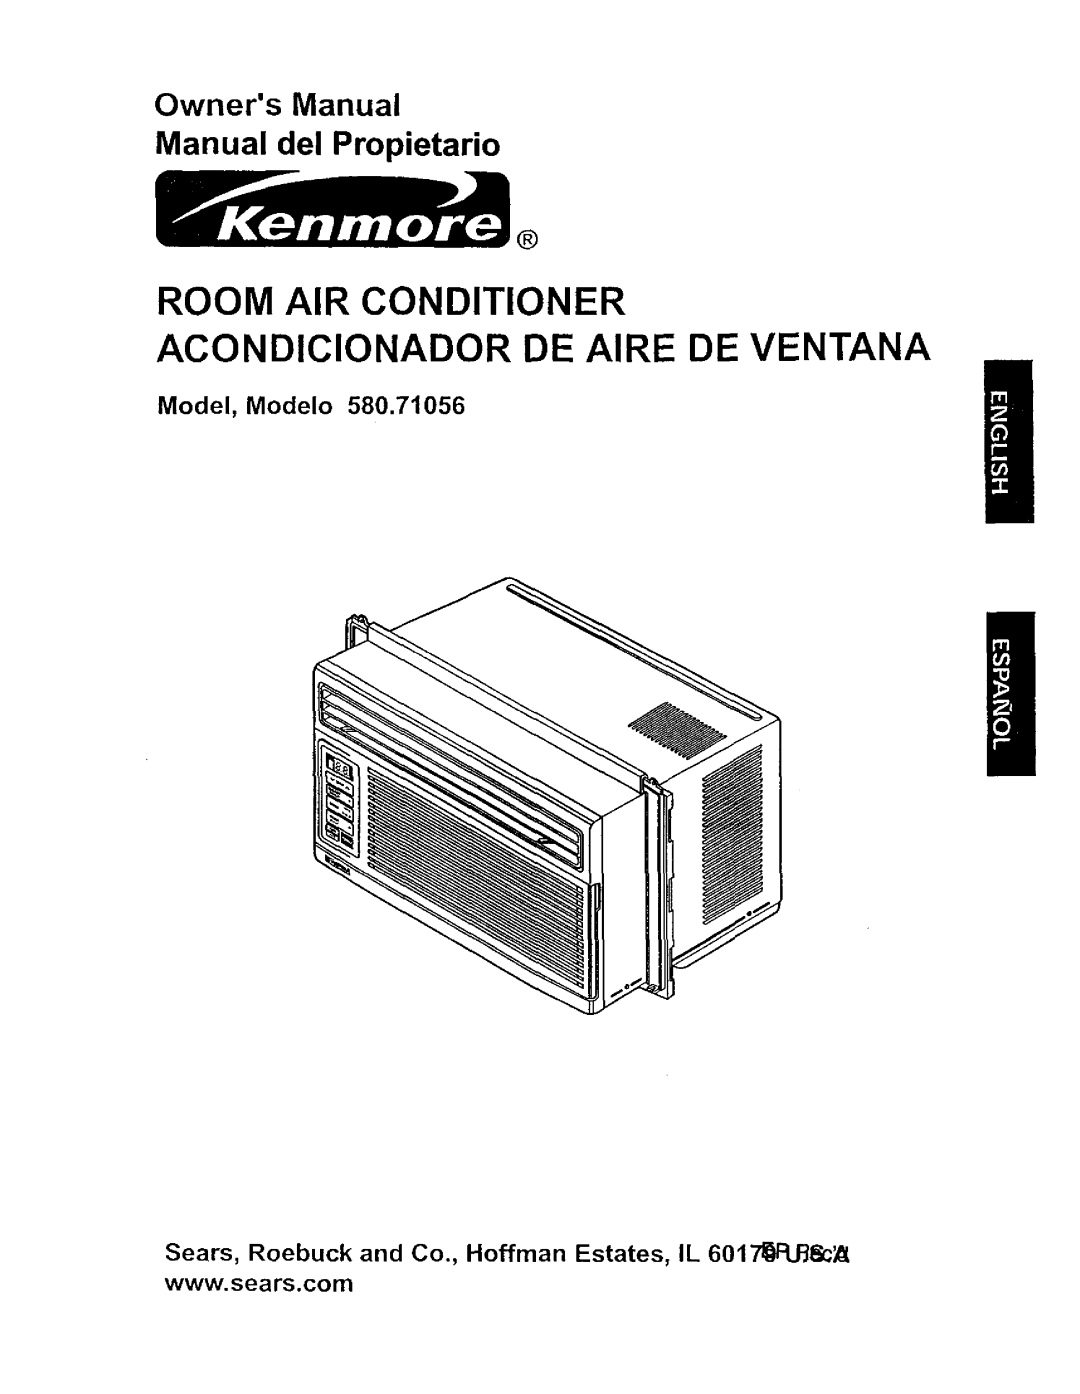 Kenmore 580.71056 owner manual Model, Modelo, Room Air Conditioner, Acondicionador De Aire De Ventana 